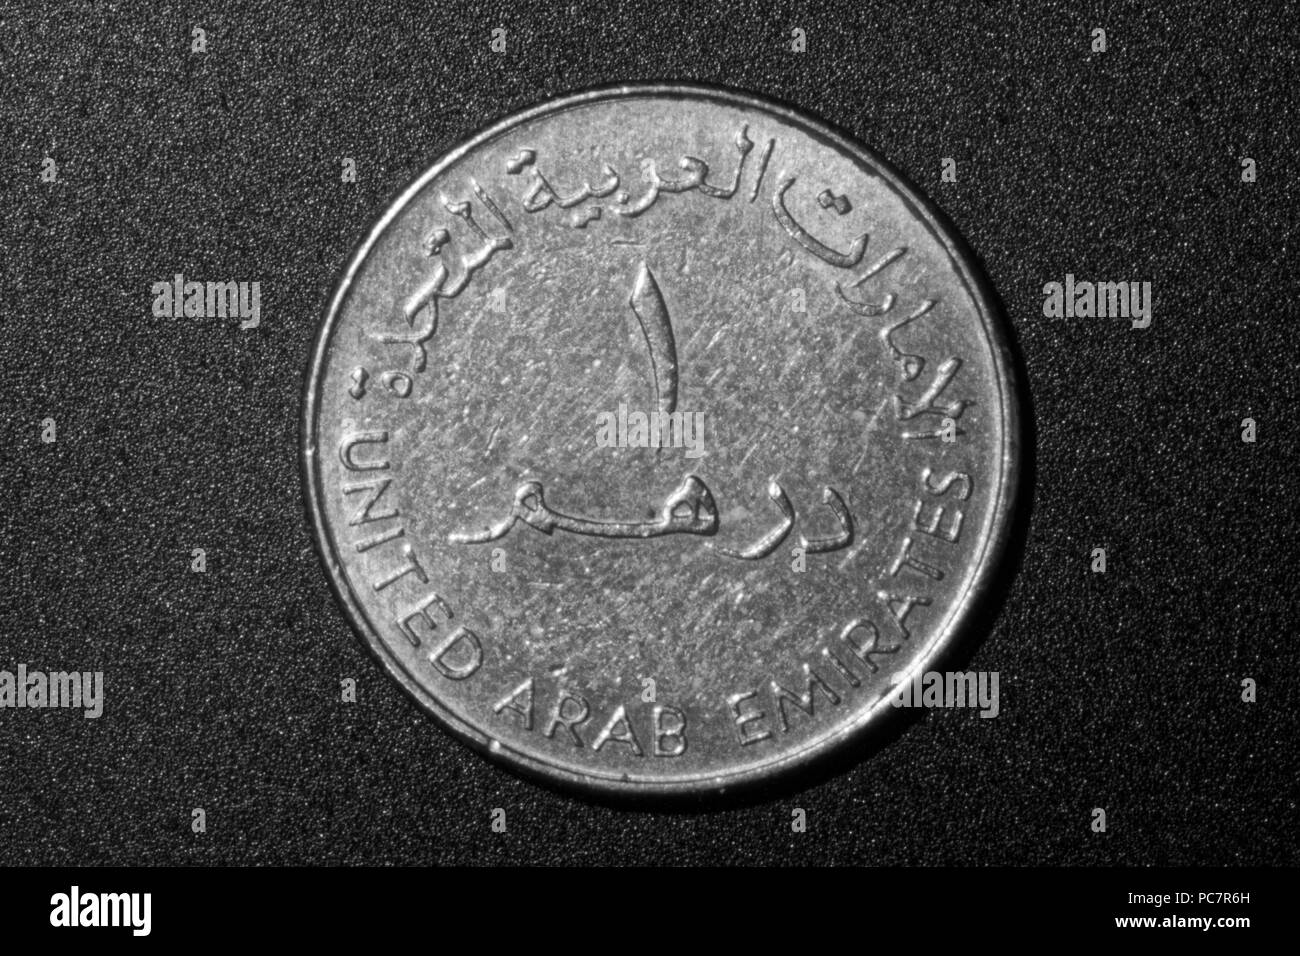 United Arab Emirates coin,one dirham Stock Photo